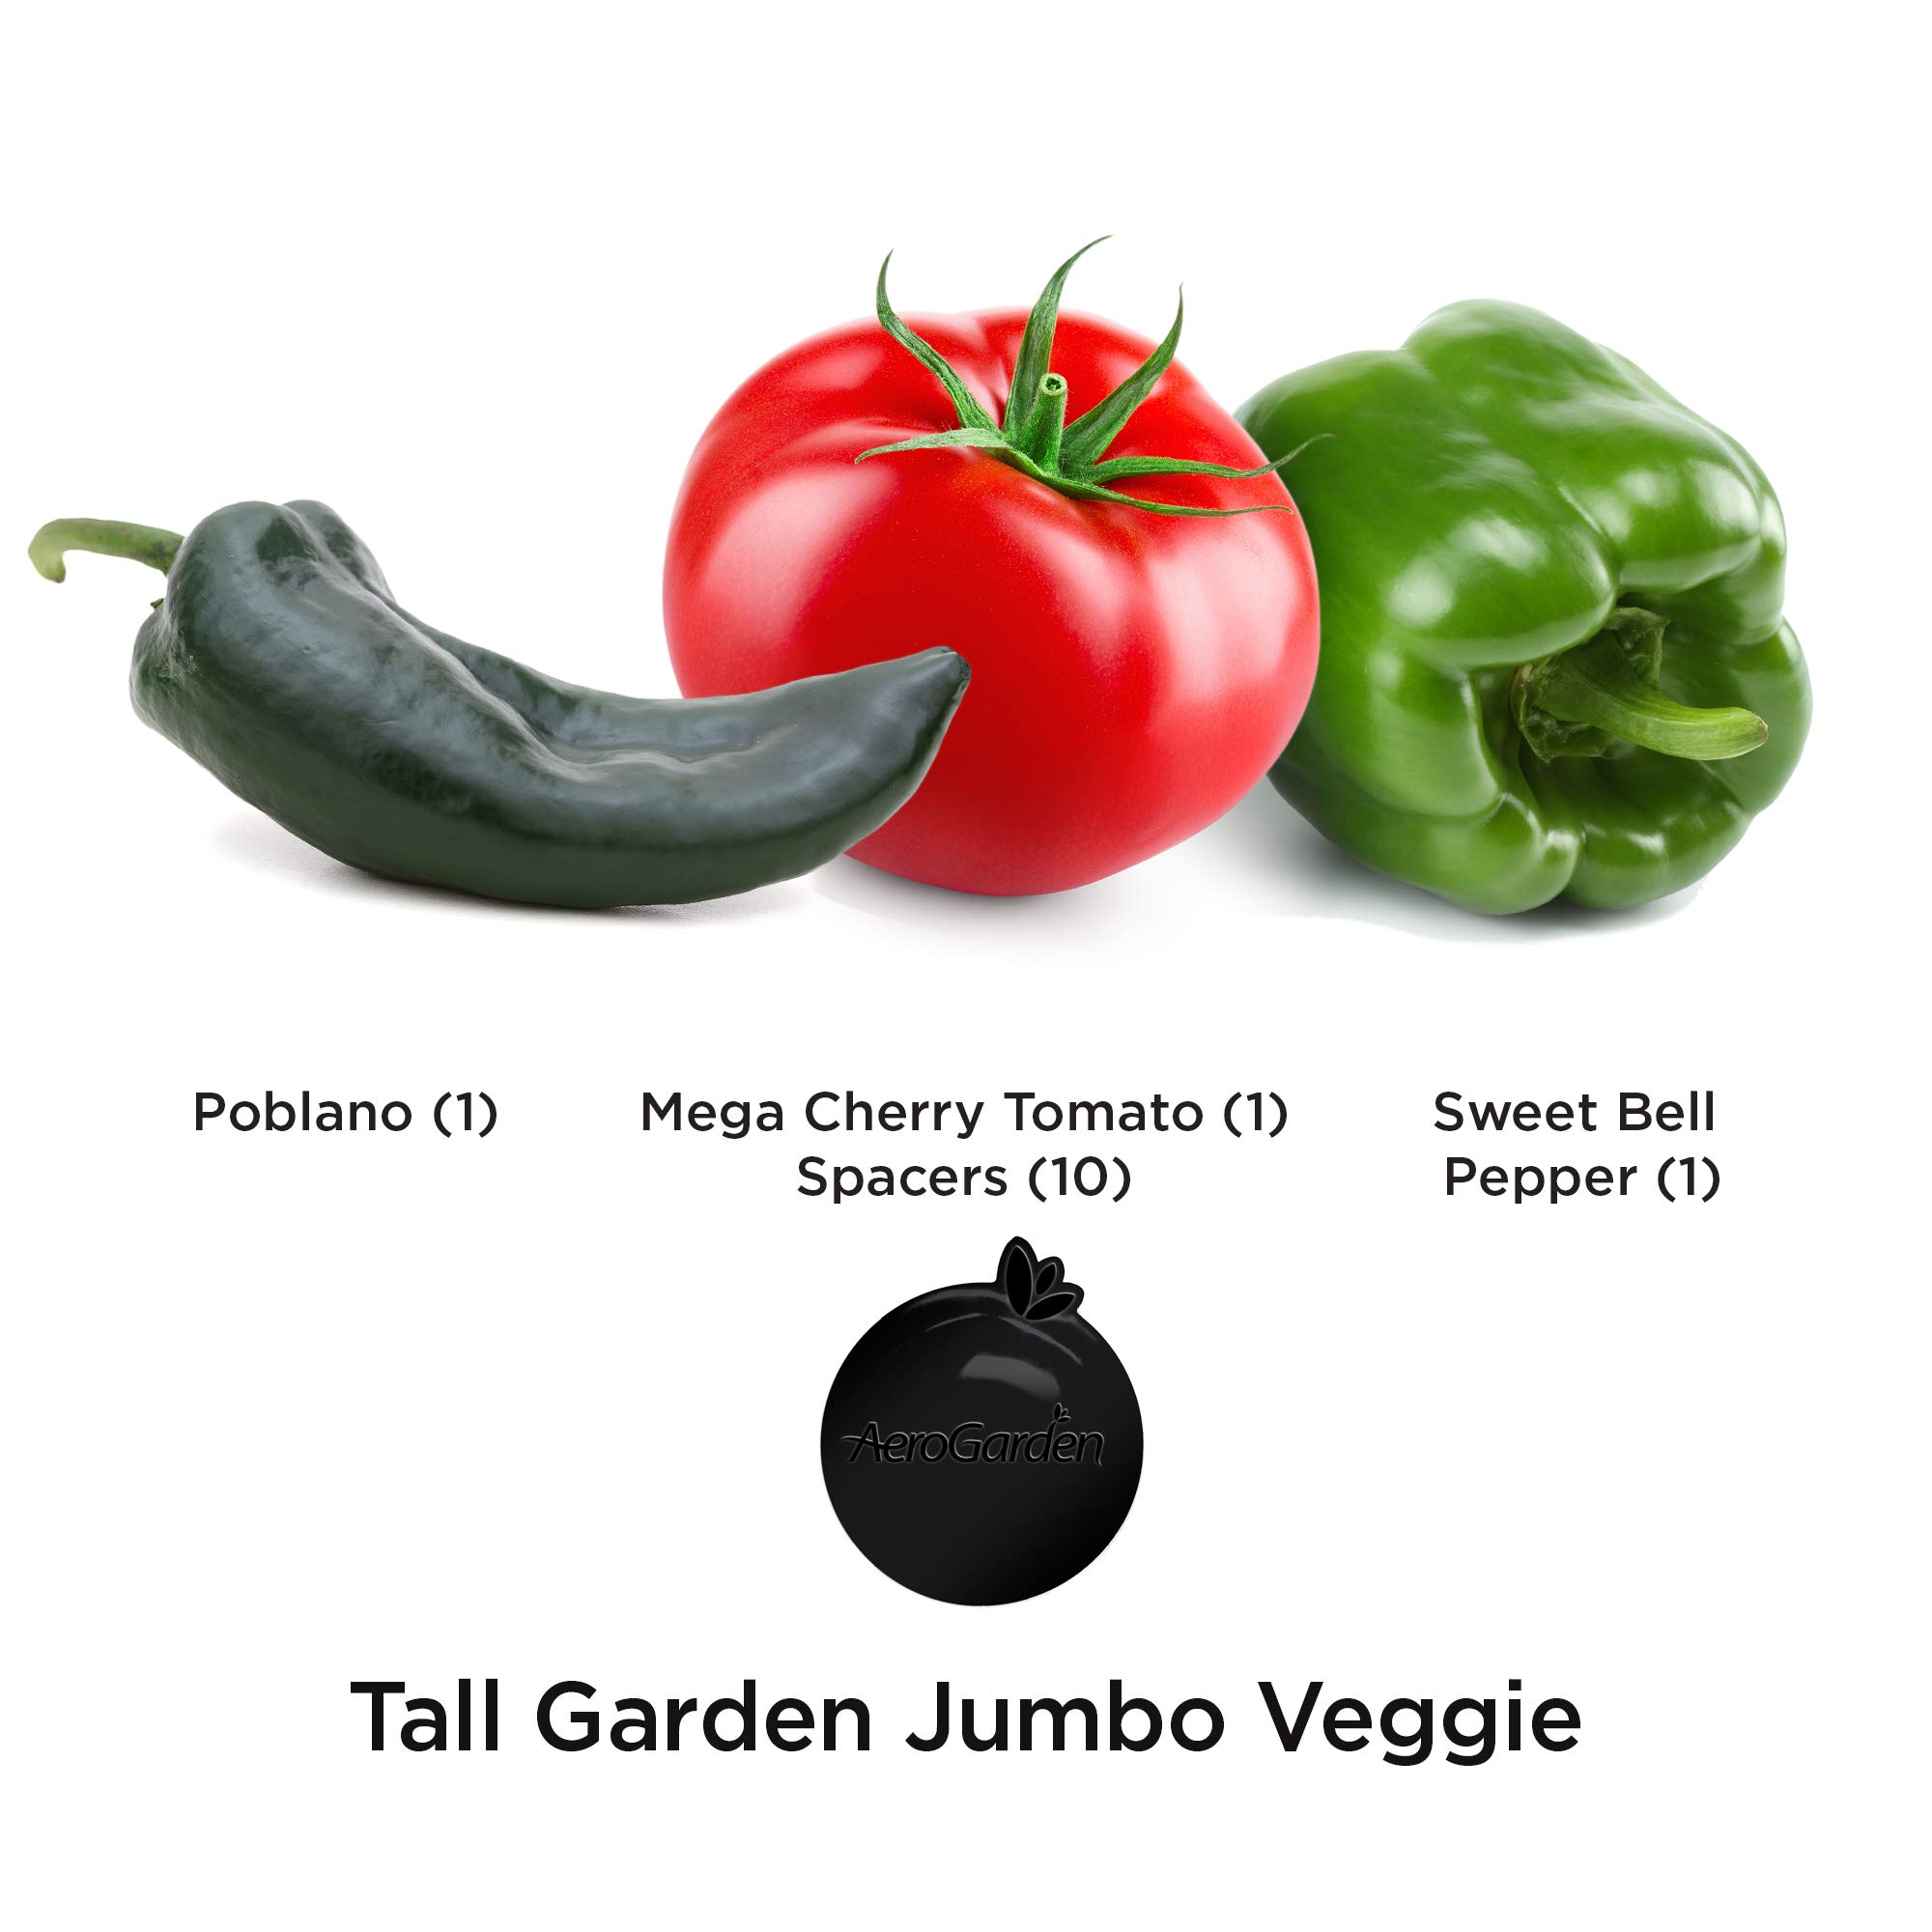 AeroGarden Jumbo Veggies Seed Pod Kit - Mega Cherry Tomato, Poblano Pepper, and Sweet Bell Pepper Seed Pods for Tall Gardens